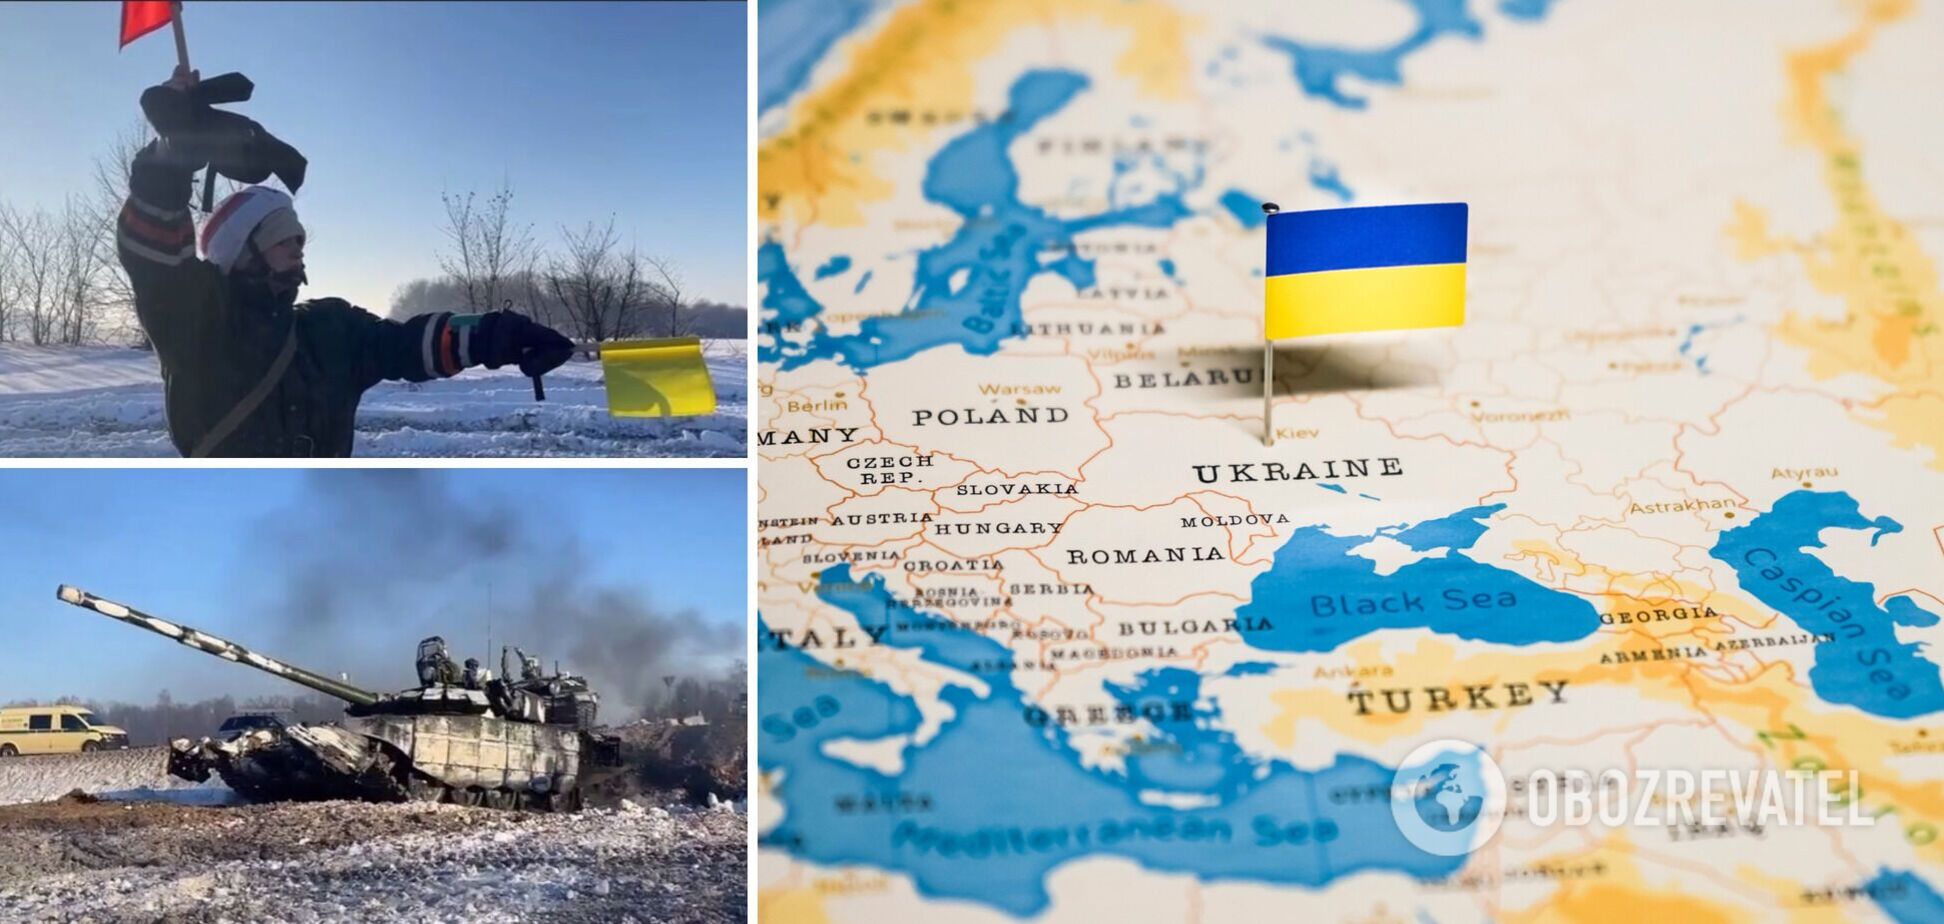 Росія почала відведення військ від кордонів України: що відбувається і чи є загроза вторгнення. Відео